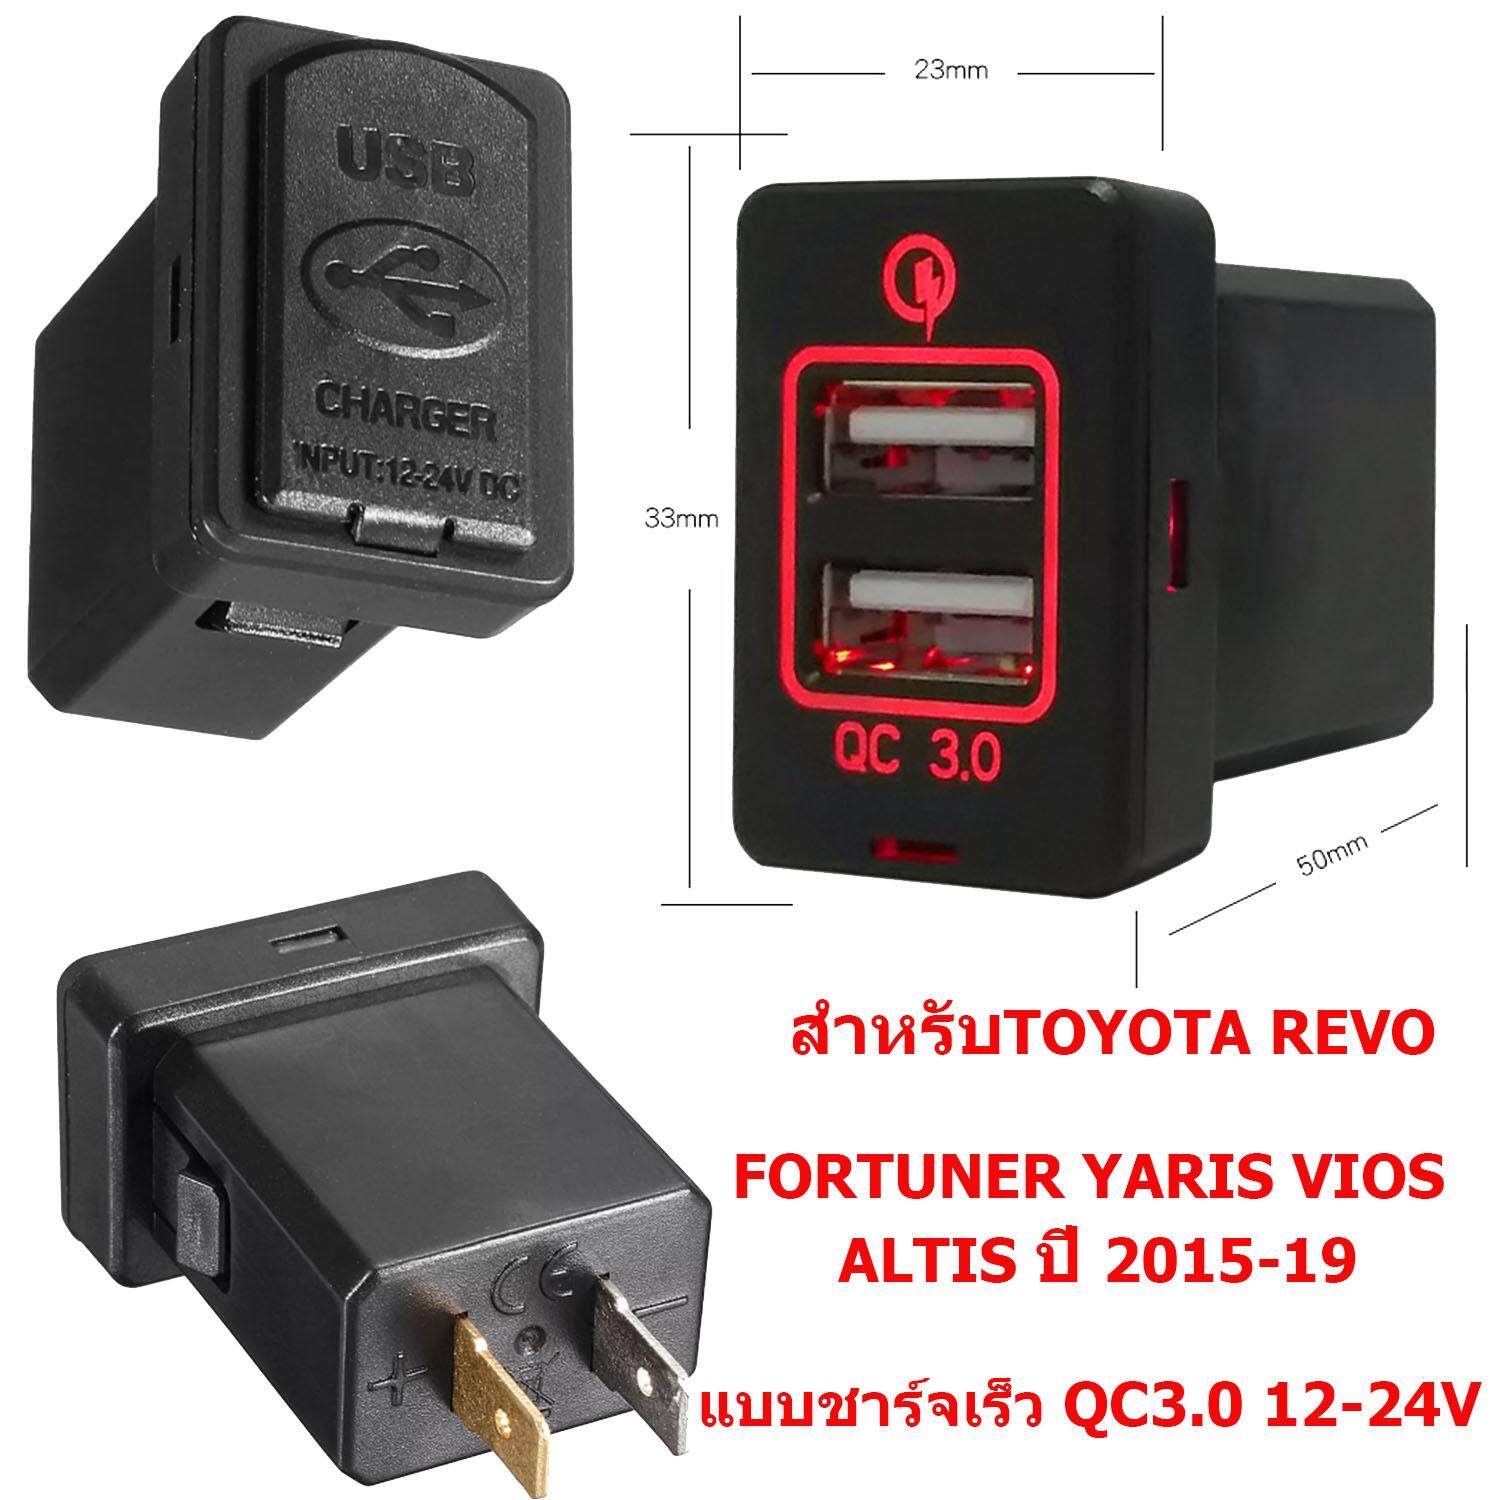 ช่องชาร์จไฟ USB แบบคู่ชาร์จด่วน 3.0AสำหรับTOYOTA HILUX REVO FORTUNER YARIS ALTIS CAMRY ปี2011-18 มีไฟโชว์สีแดง